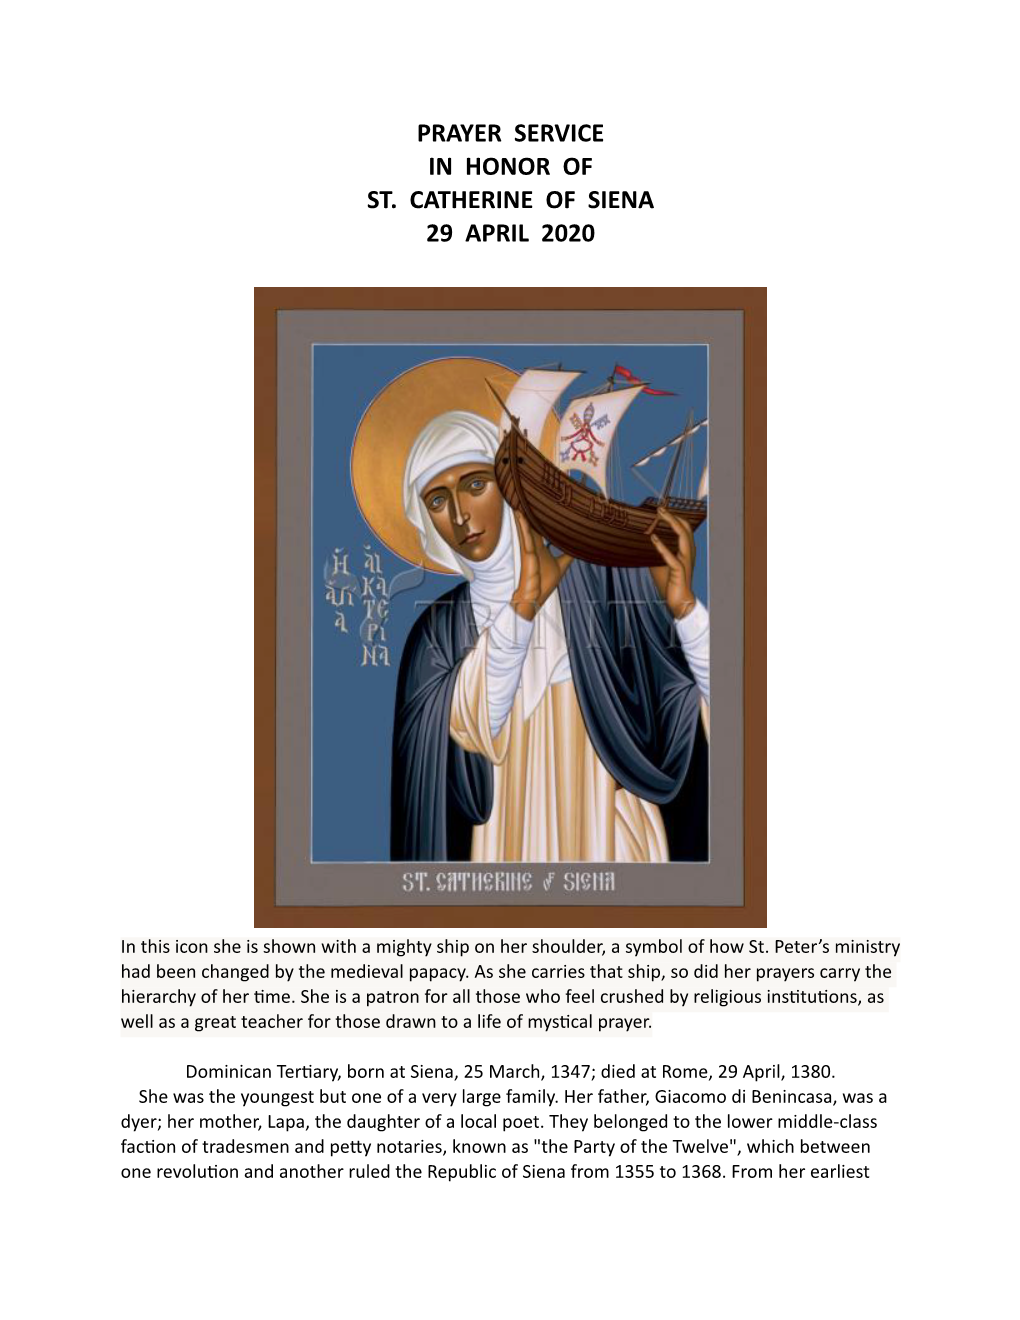 Prayer Service in Honor of St. Catherine of Siena 29 April 2020